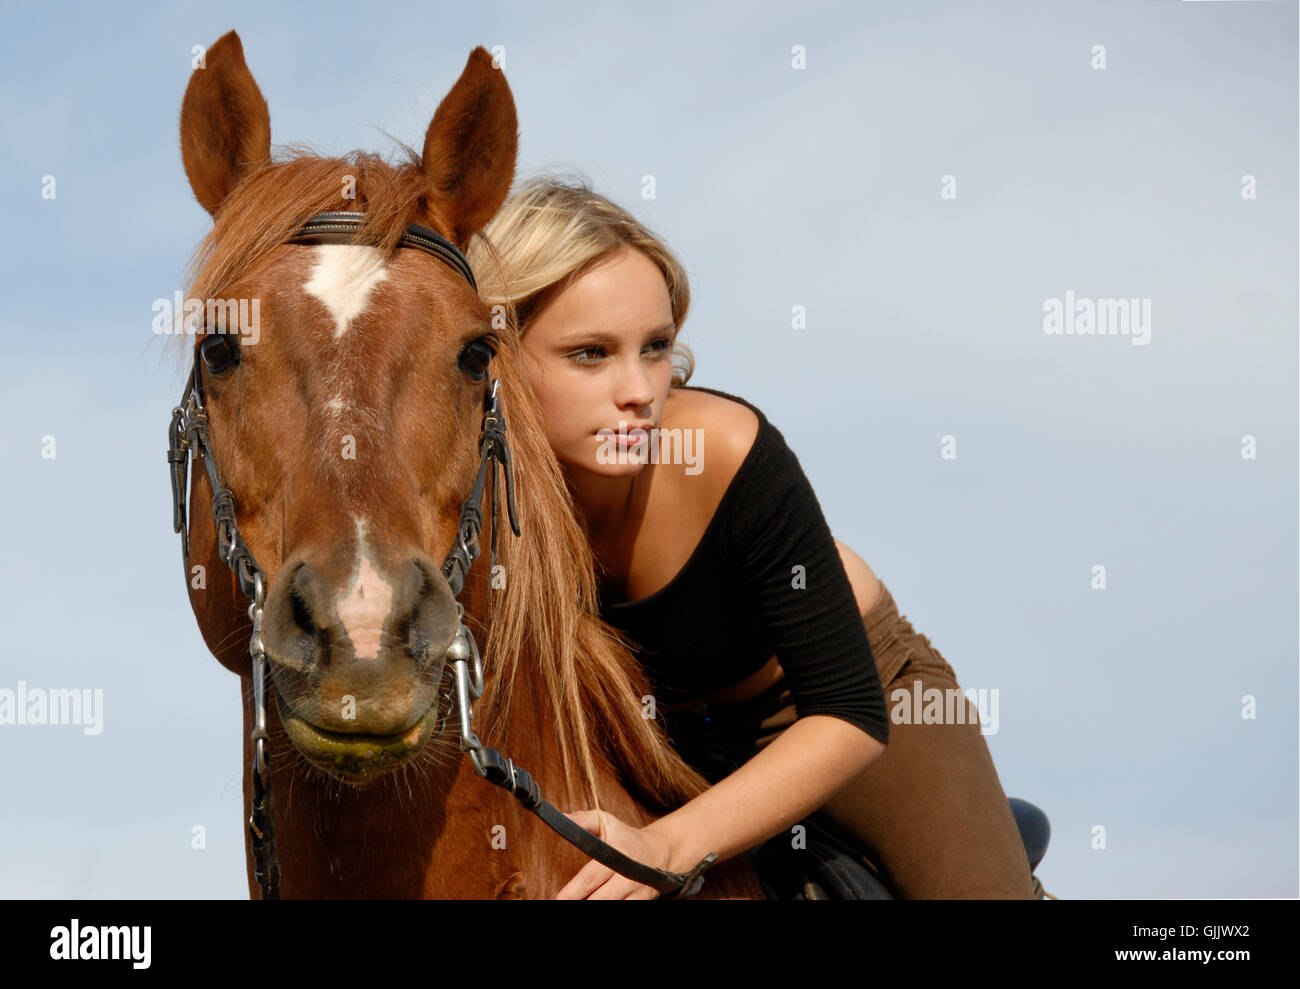 woman horse portrait Stock Photo